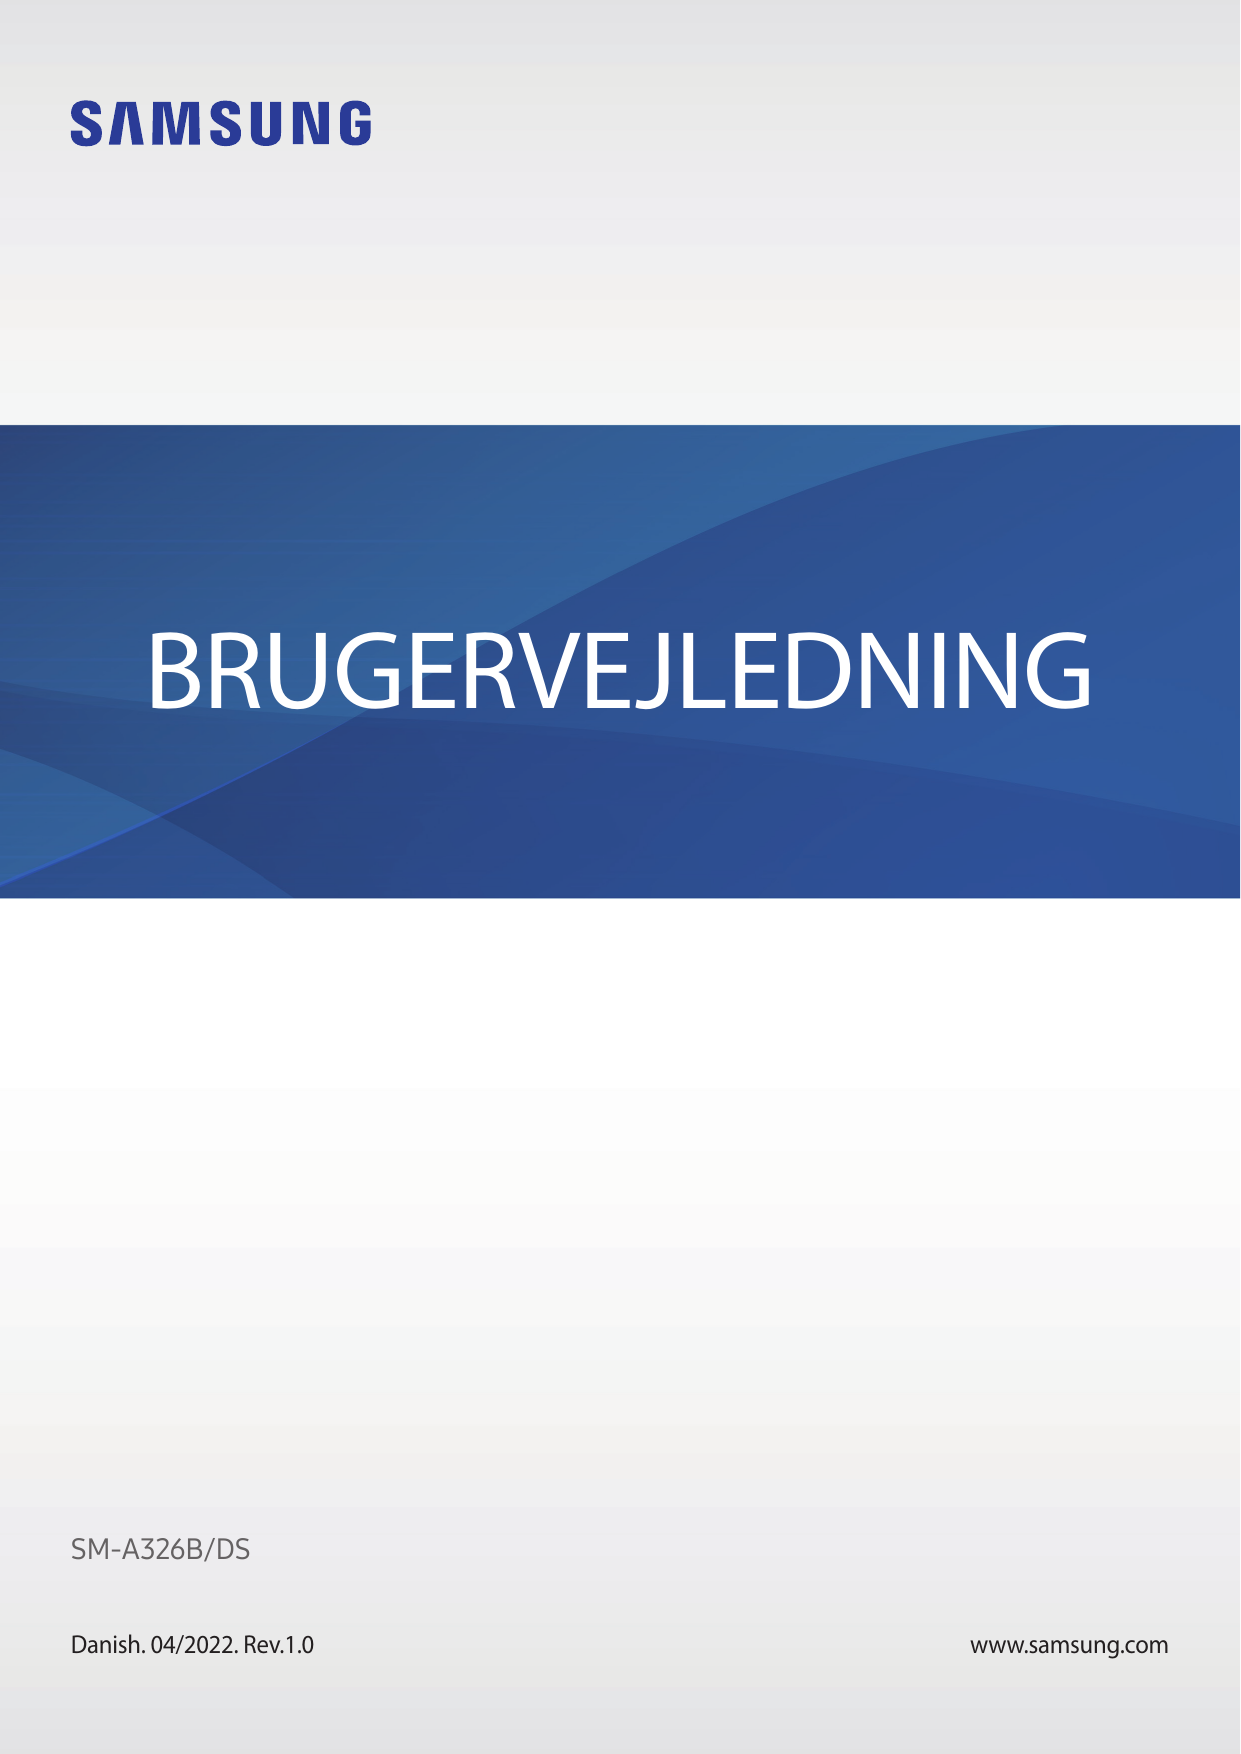 BRUGERVEJLEDNINGSM-A326B/DSDanish. 04/2022. Rev.1.0www.samsung.com